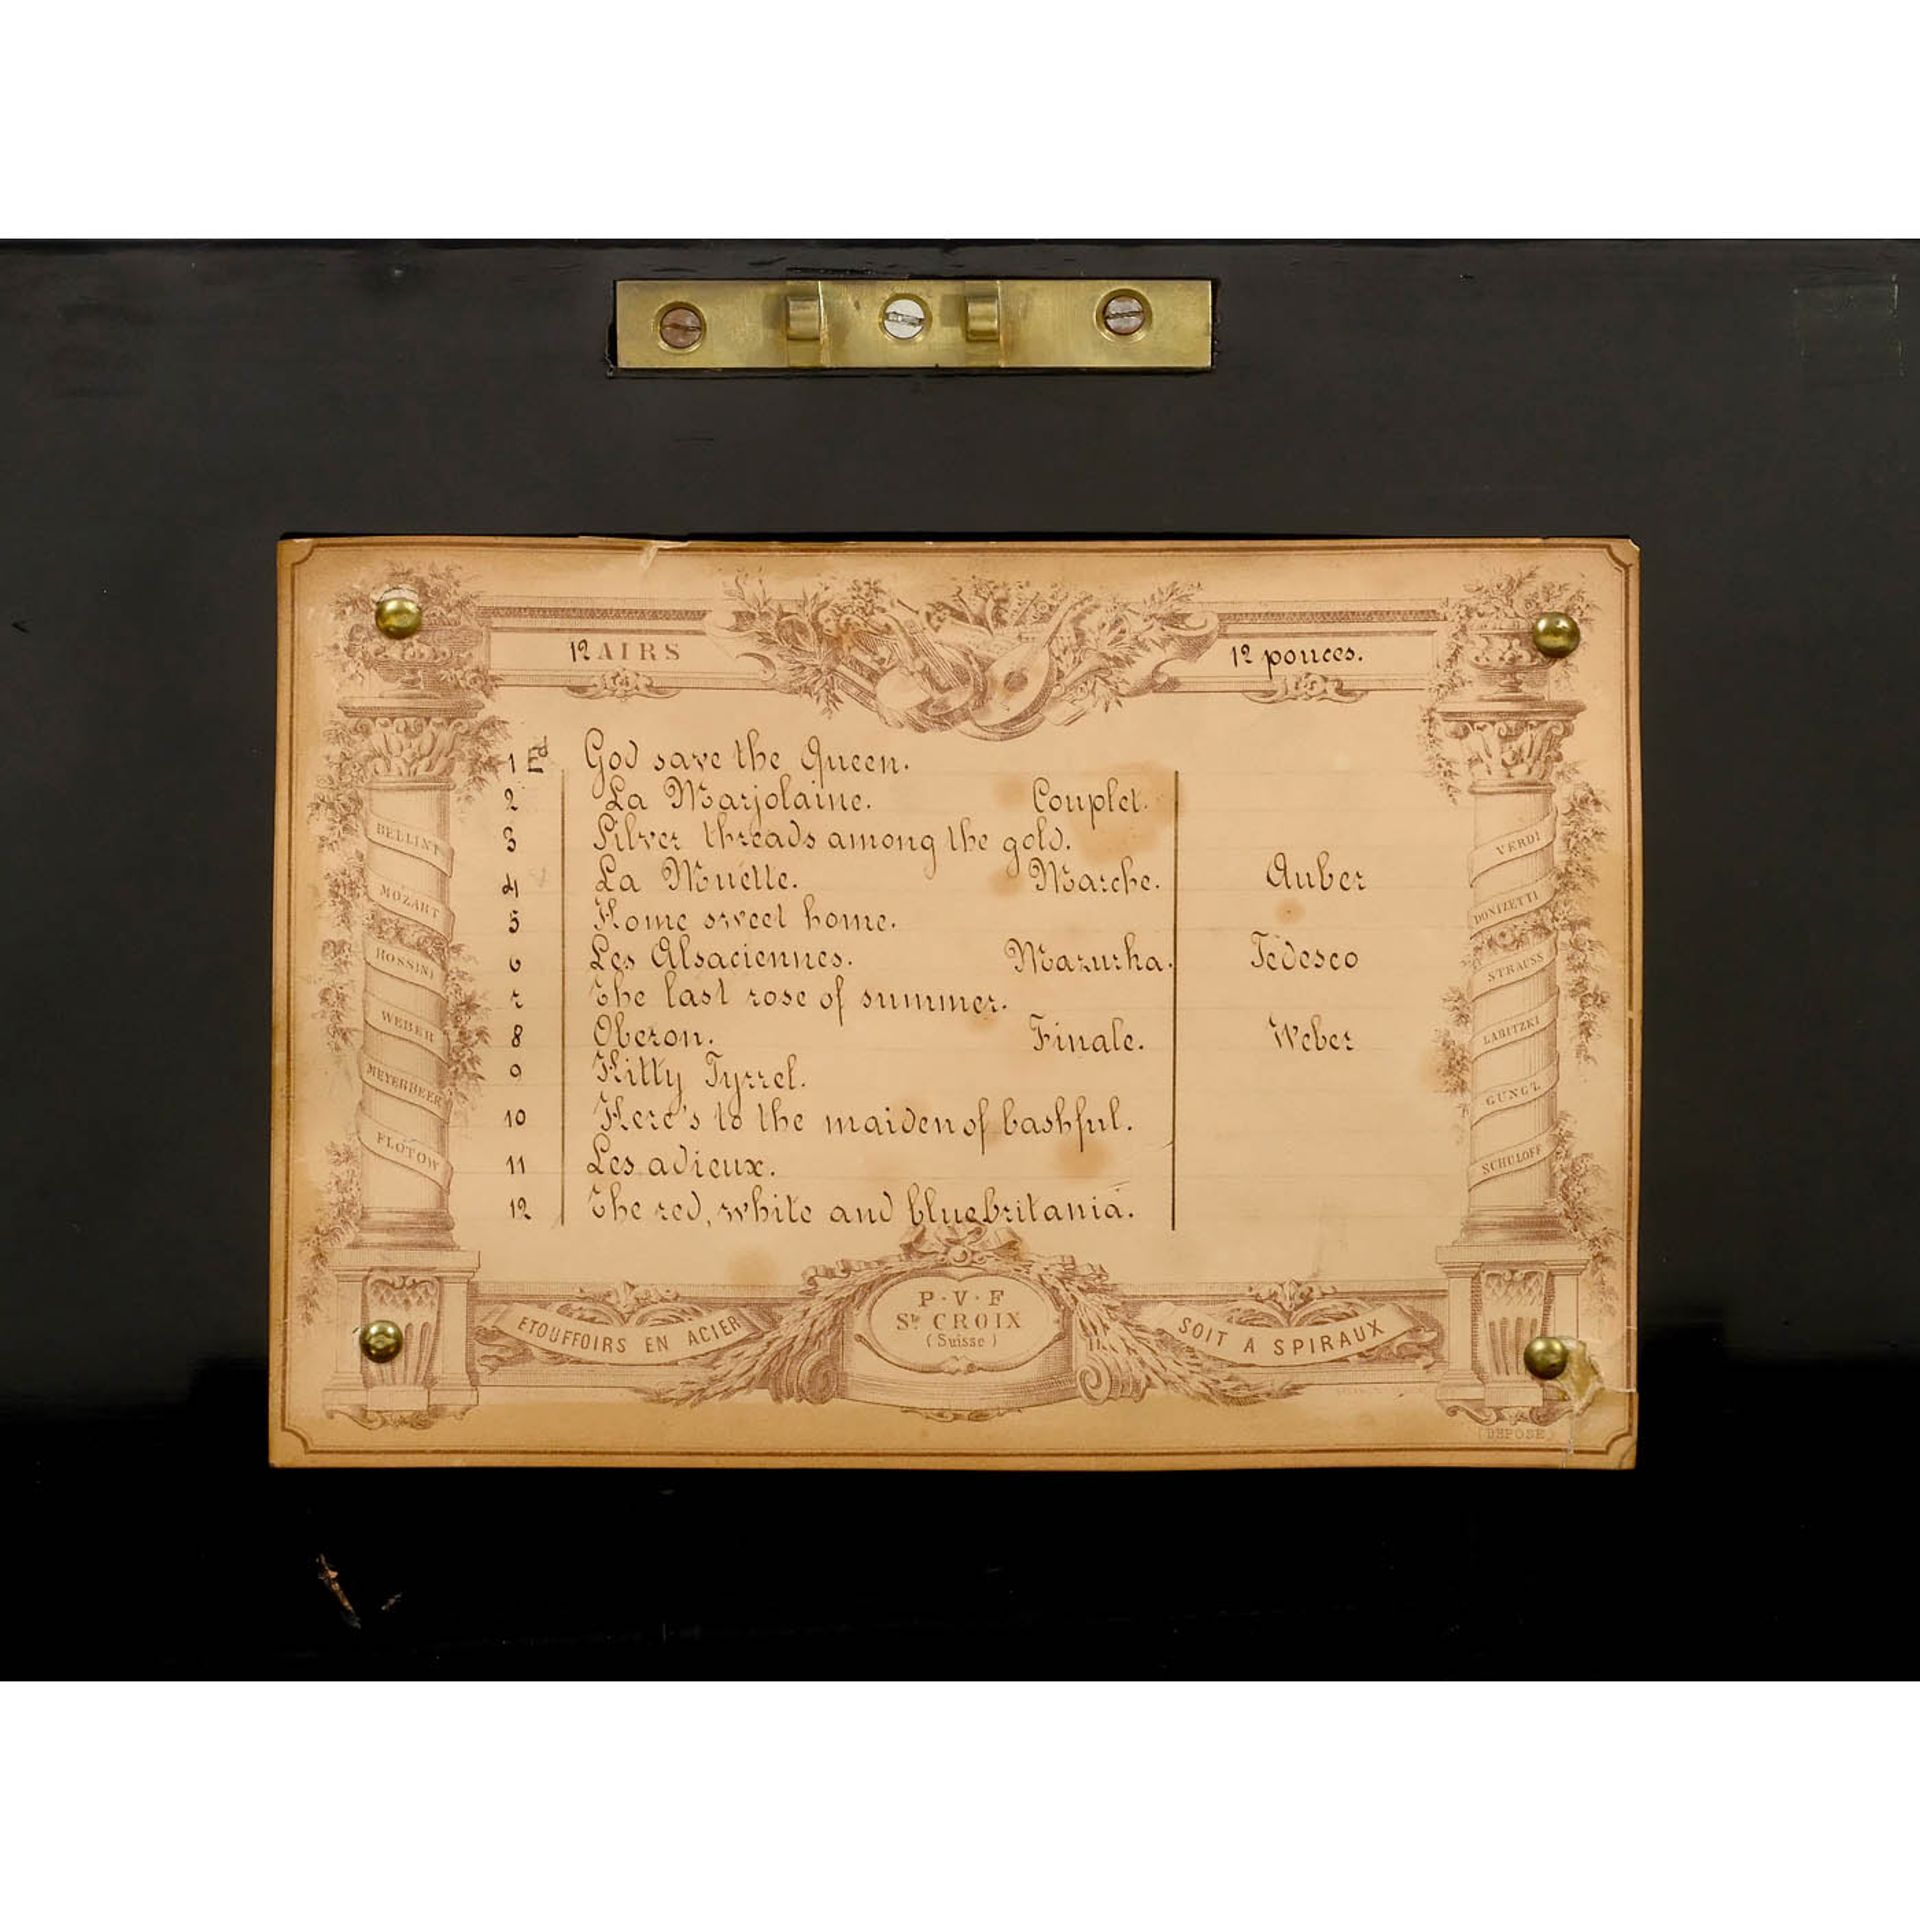 Alternate-Tip Musical Box by Paillard-Vaucher Fils, c. 1885 - Image 4 of 5